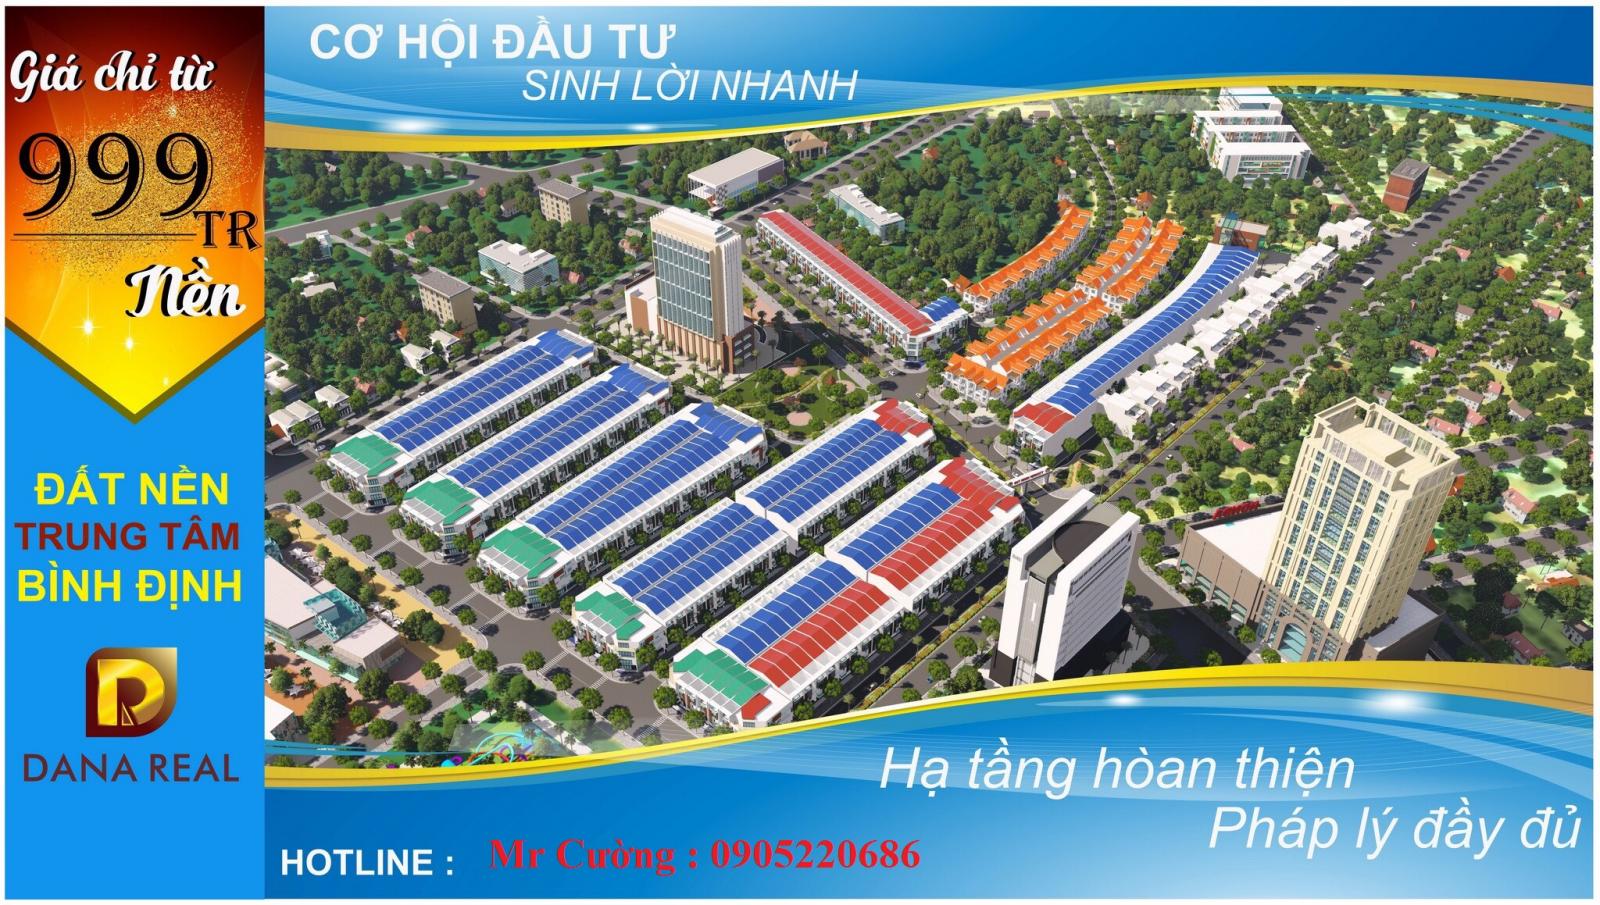 Mở bán giai đoạn 1 dự án New Quy Nhơn City chỉ có 20 lô, Giá 1 tỷ/lô - Đất nền ven biển Quy Nhơn.